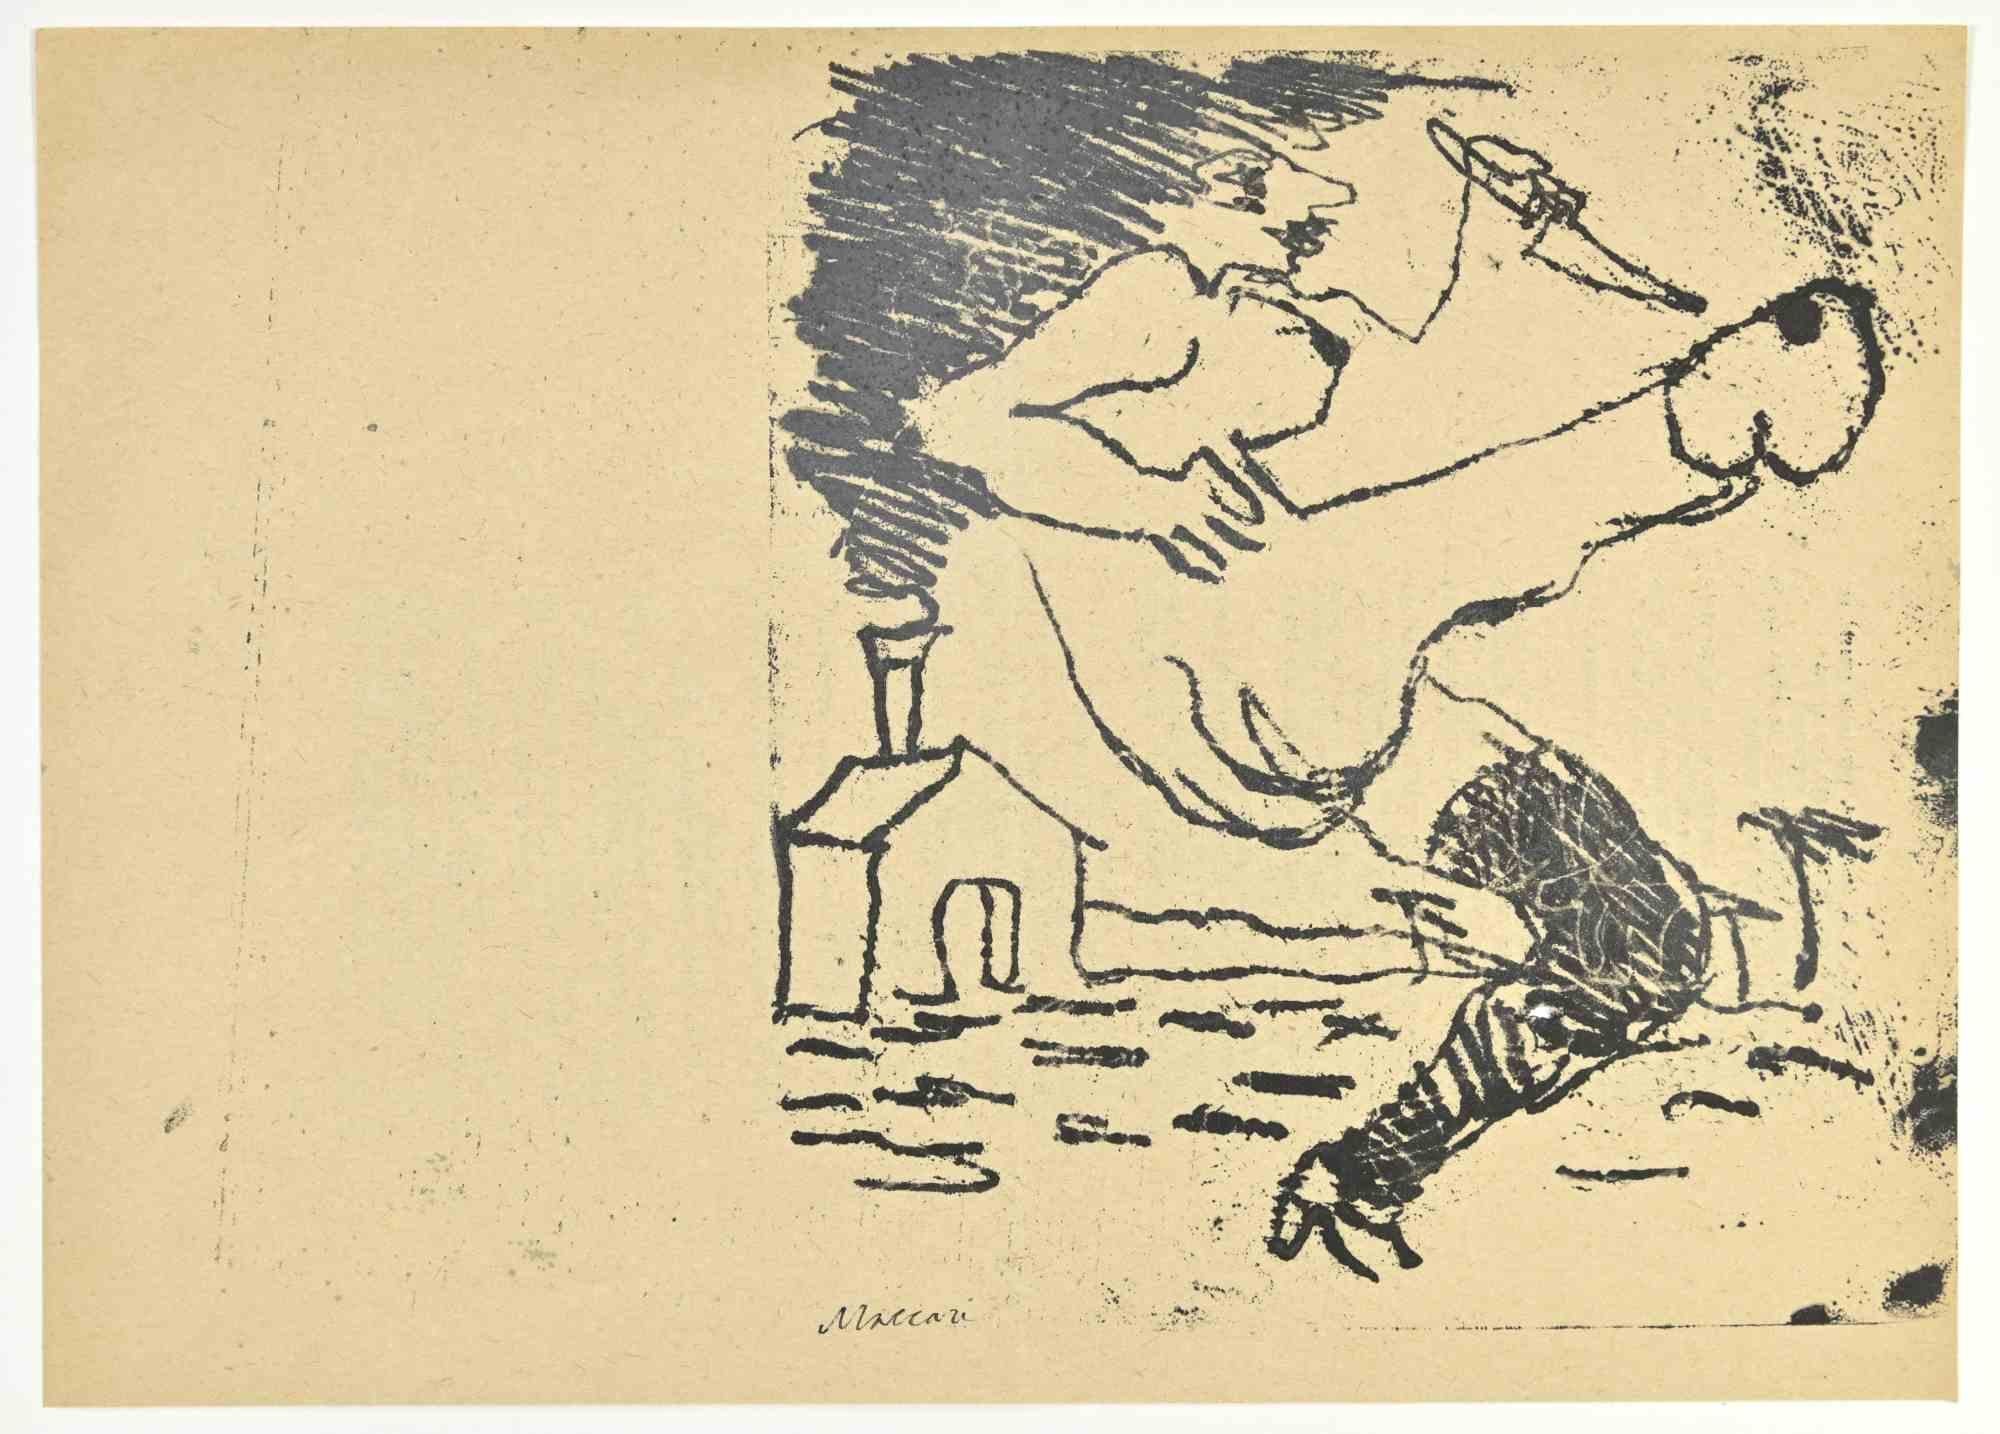 Erotic Scene ist ein Monotypie Druck realisiert von Mino Maccari  (1924-1989) in den 1960er Jahren.

Handsigniert auf der Unterseite.

Guter Zustand.

Mino Maccari (Siena, 1924-Rom, 16. Juni 1989) war ein italienischer Schriftsteller, Maler, Graveur